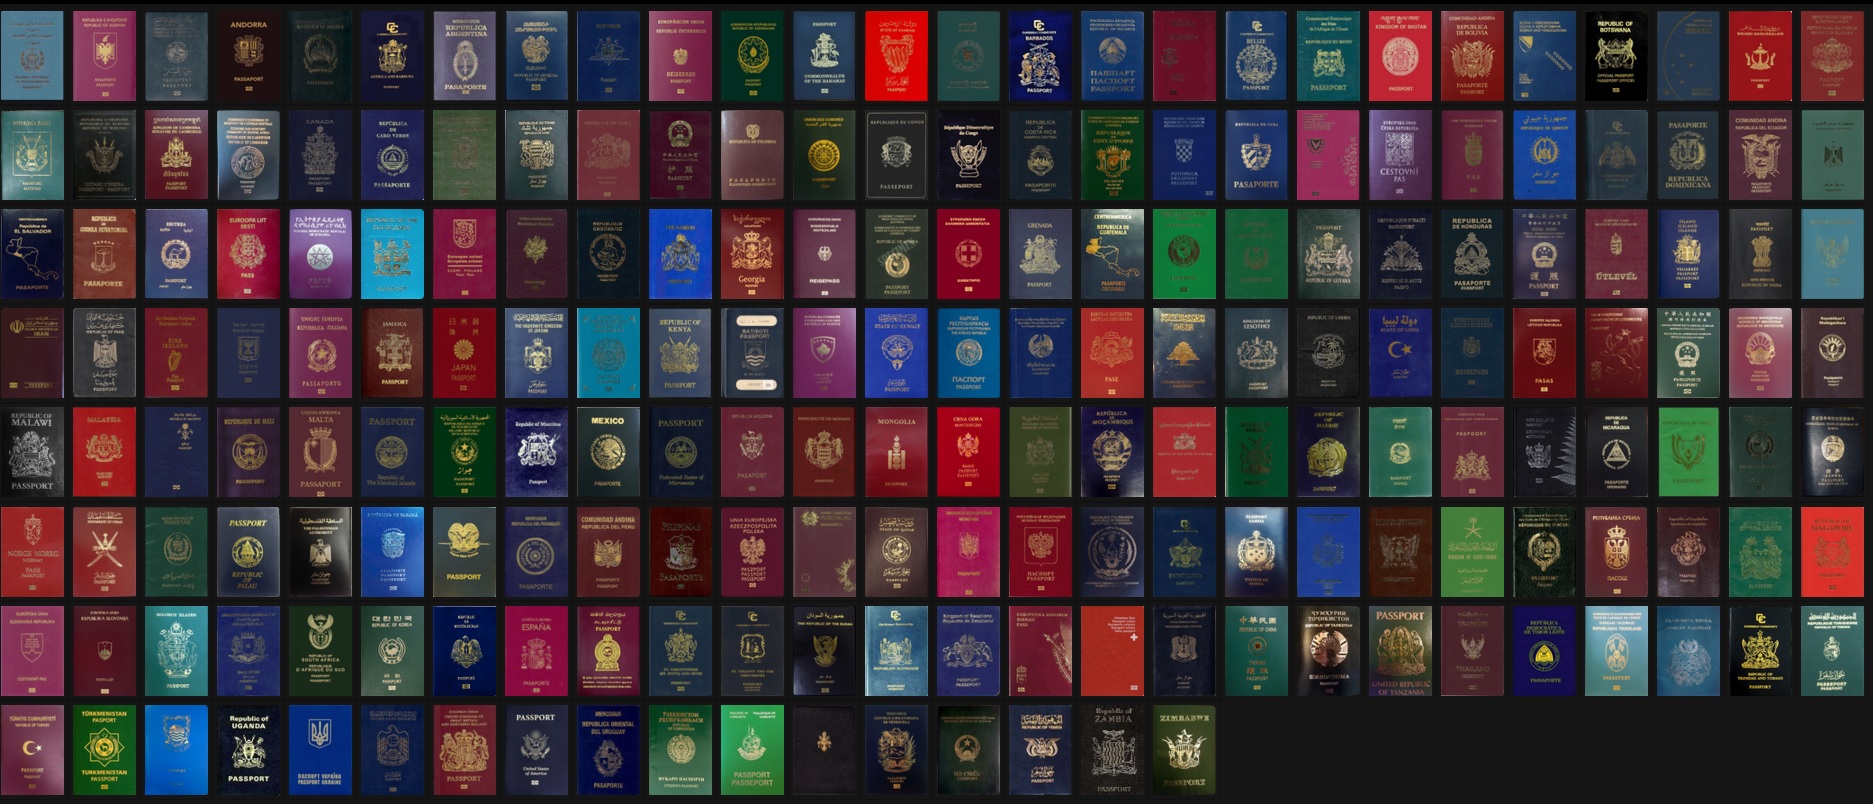 Pasports